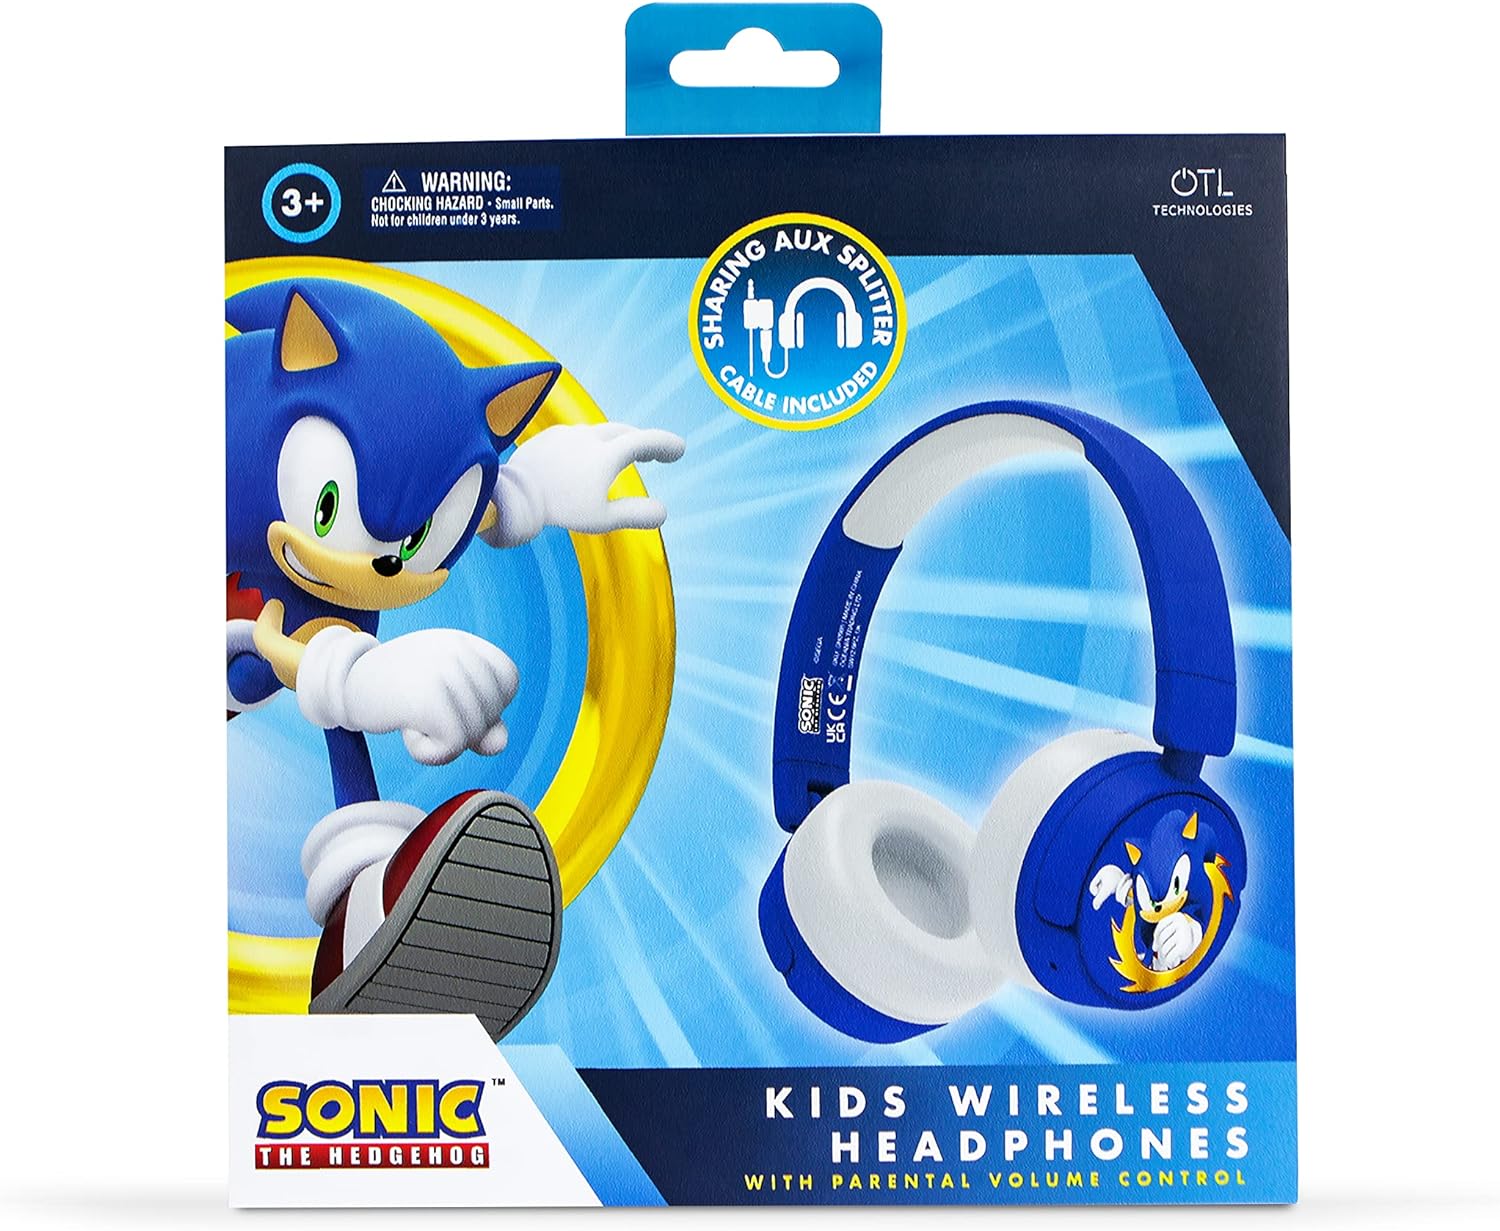 OTL vezeték nélküli fejhallgató gyerekeknek - Sonic the Hedgehog